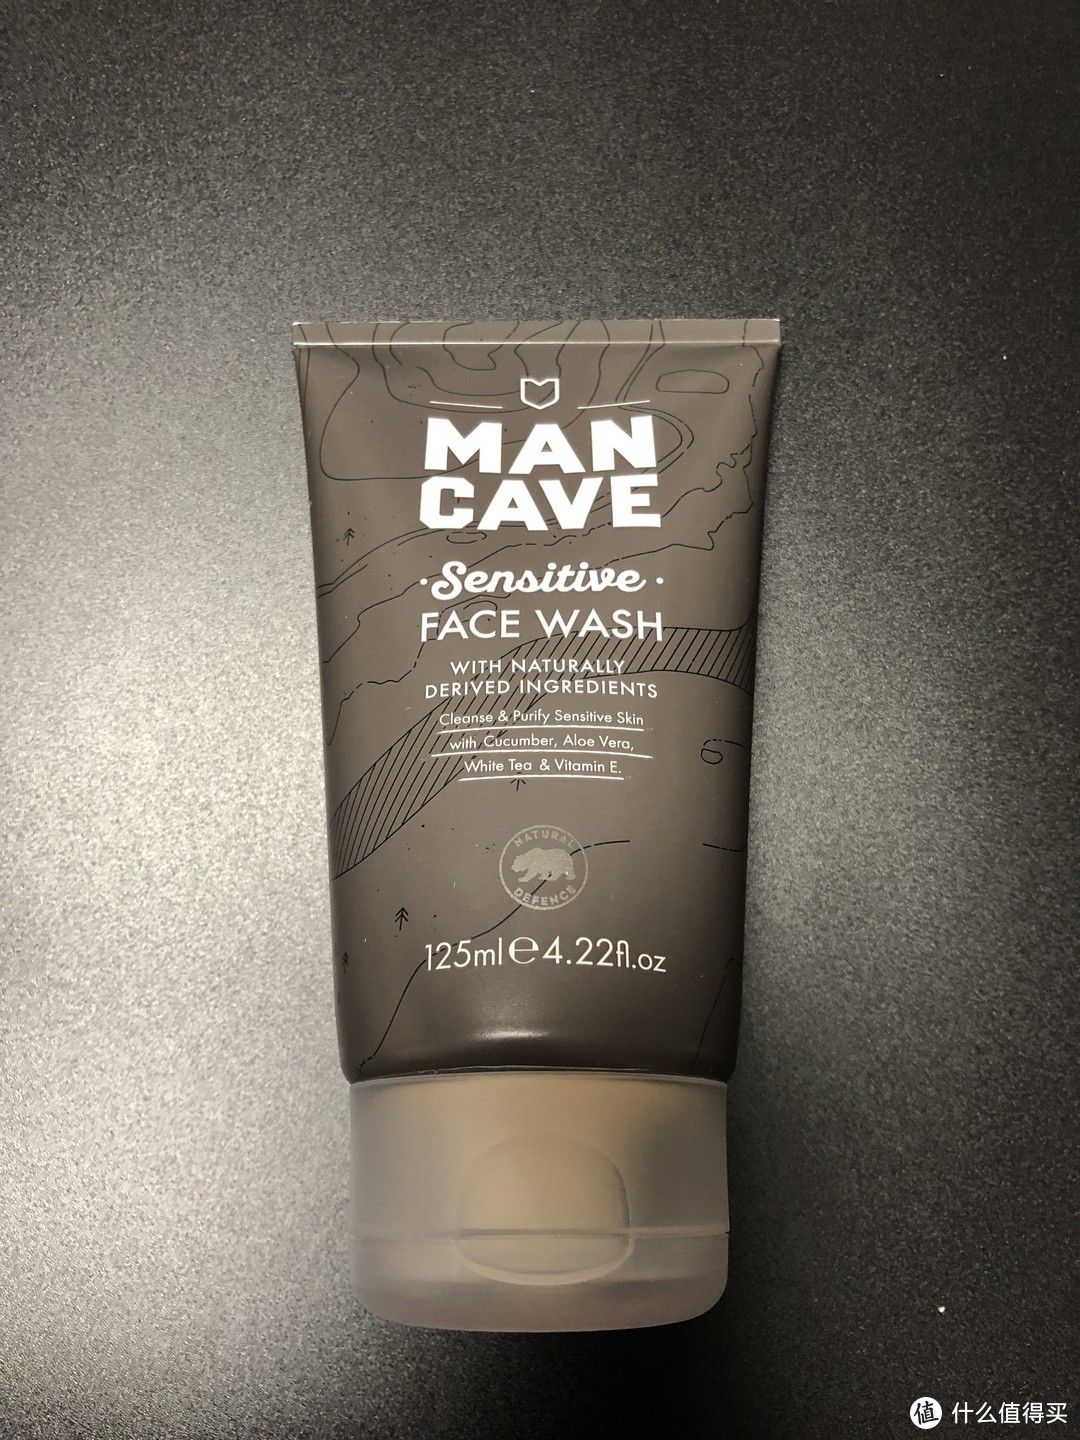 男人也要对自己好一点-MANCAVE曼凯夫 男士专属水活净润护肤套装评测